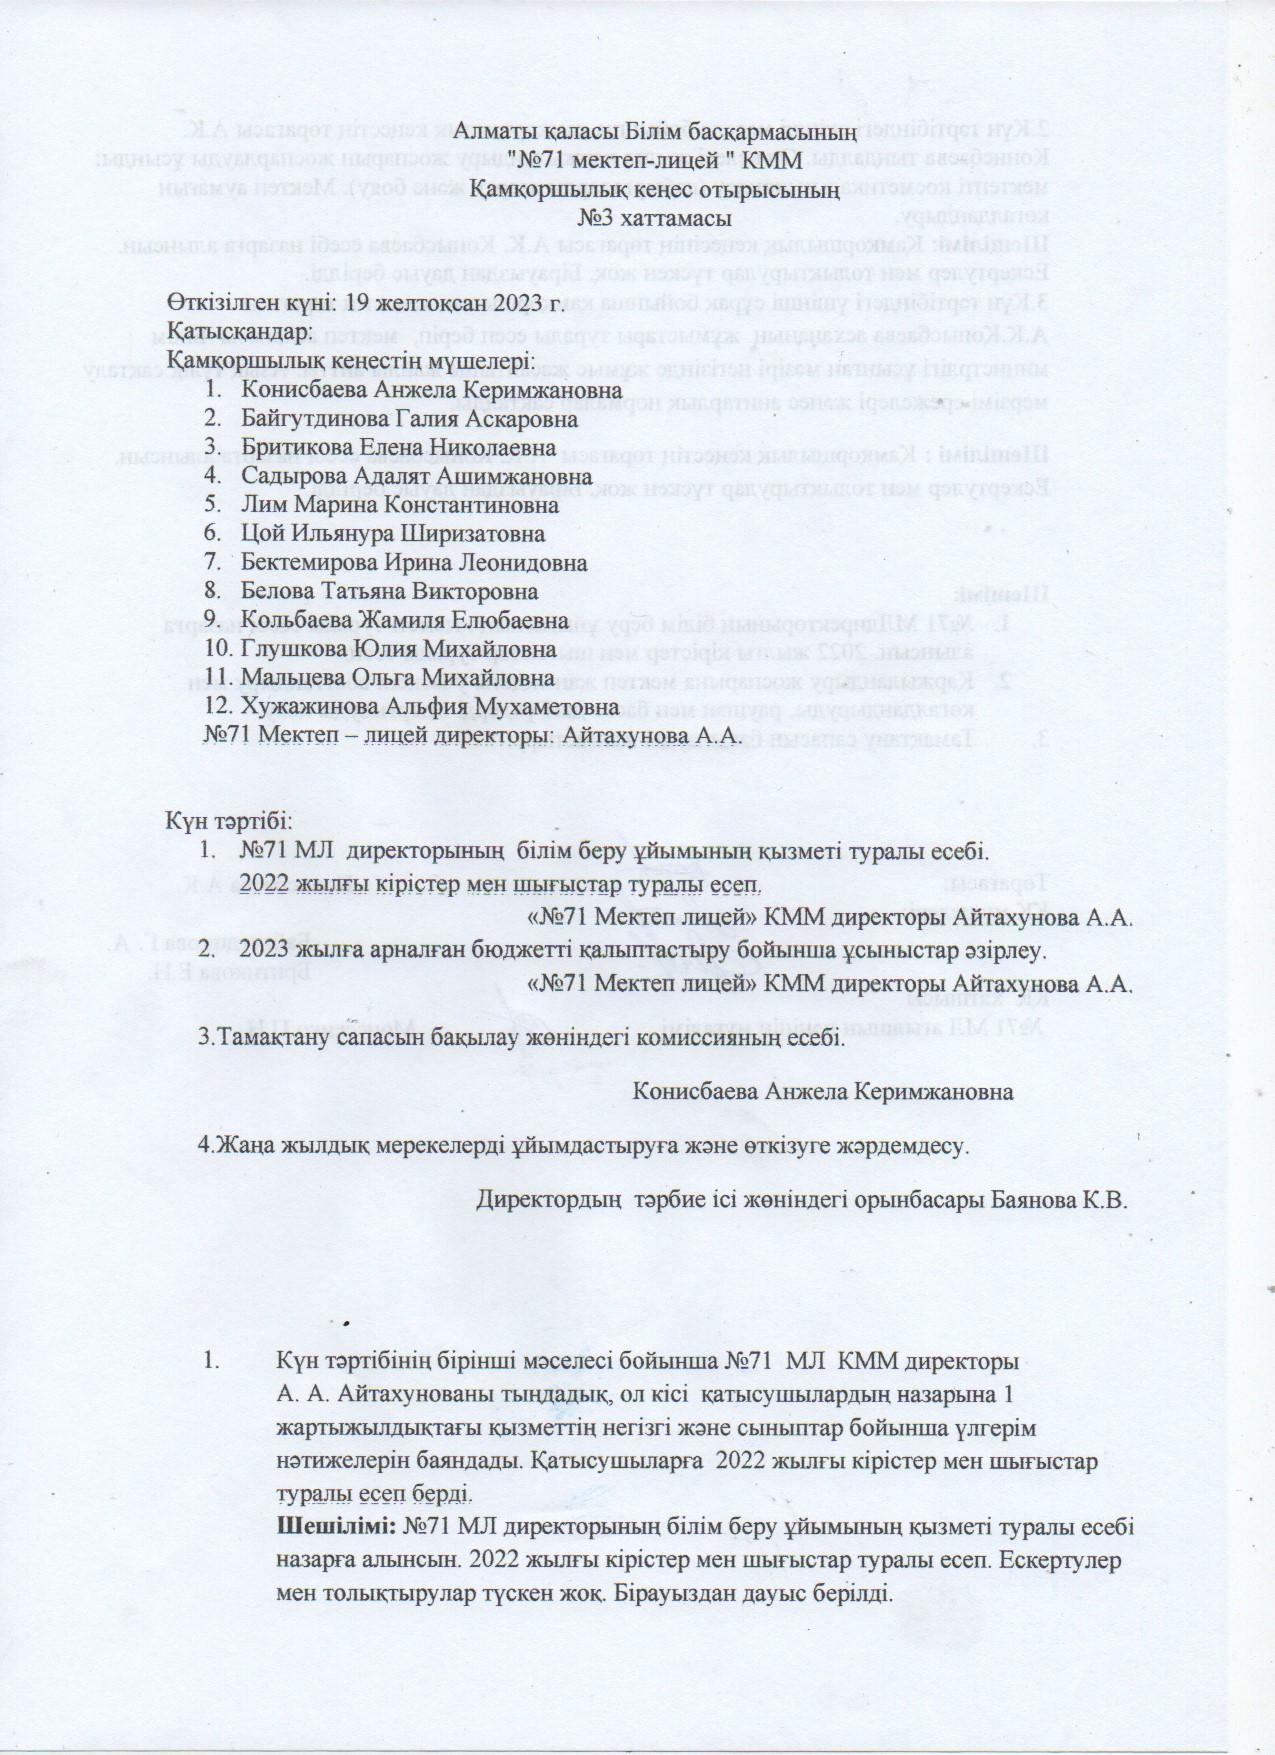 Қамқоршылық кеңес отырысының 3 хаттамасы/Протокол №3 заседания Попечительского совета